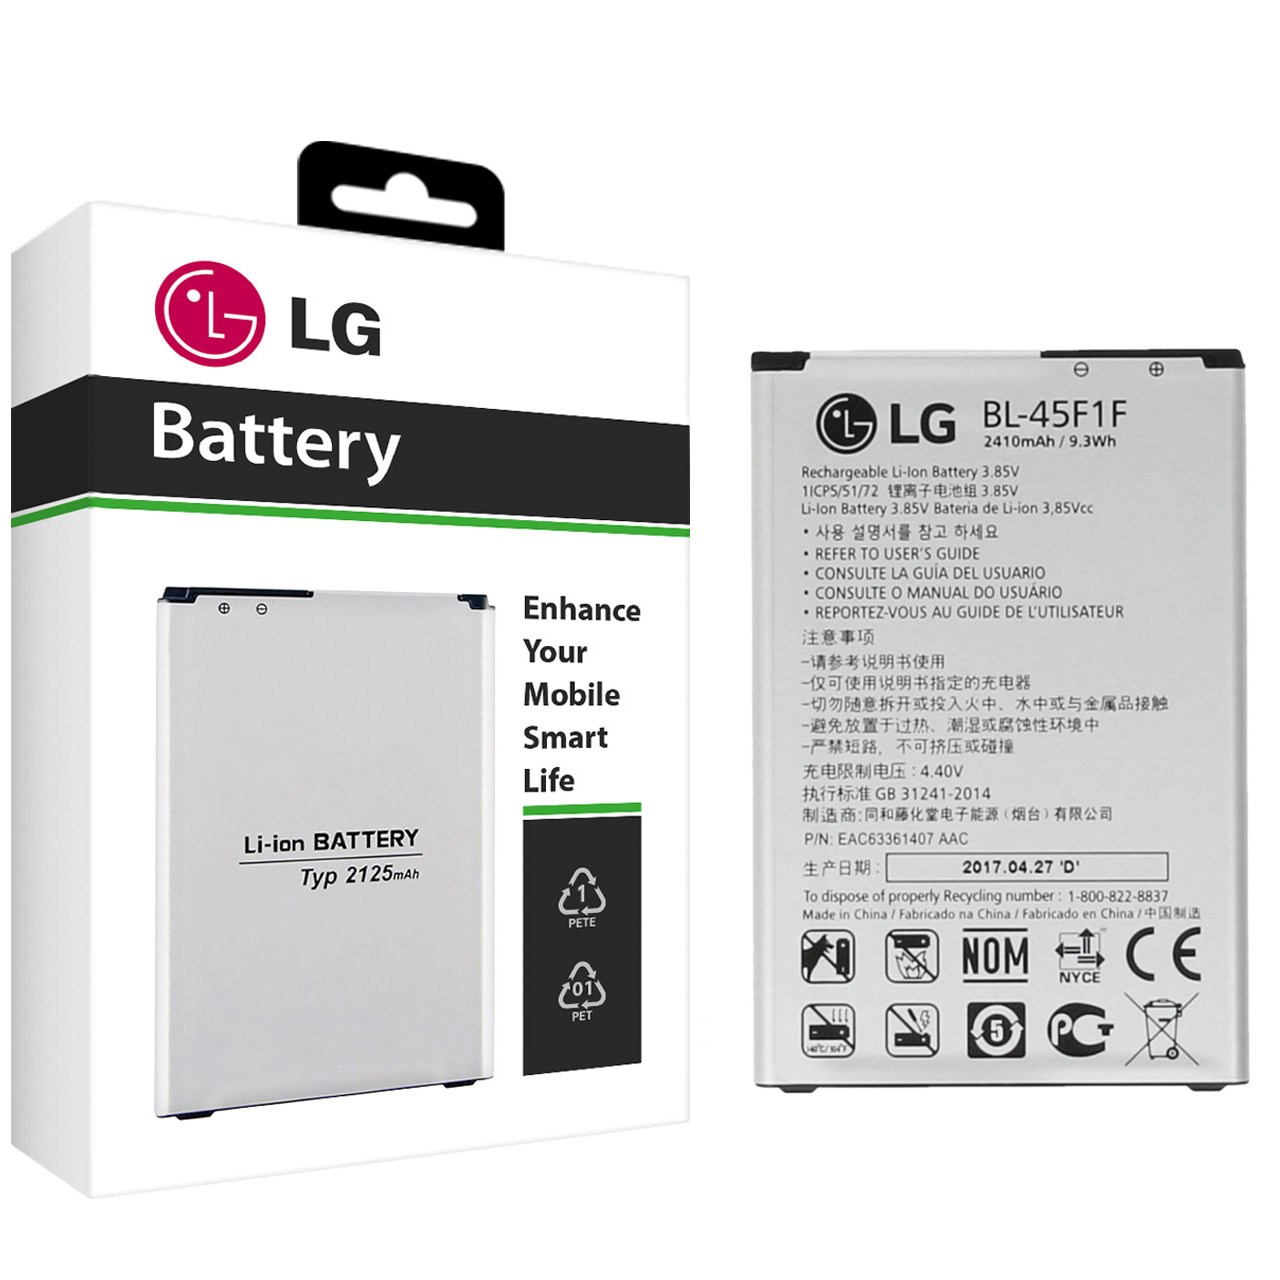 باتری موبایل مدل BL-45F1F با ظرفیت 2410mAh مناسب برای گوشی های موبایل ال جی K8 2017